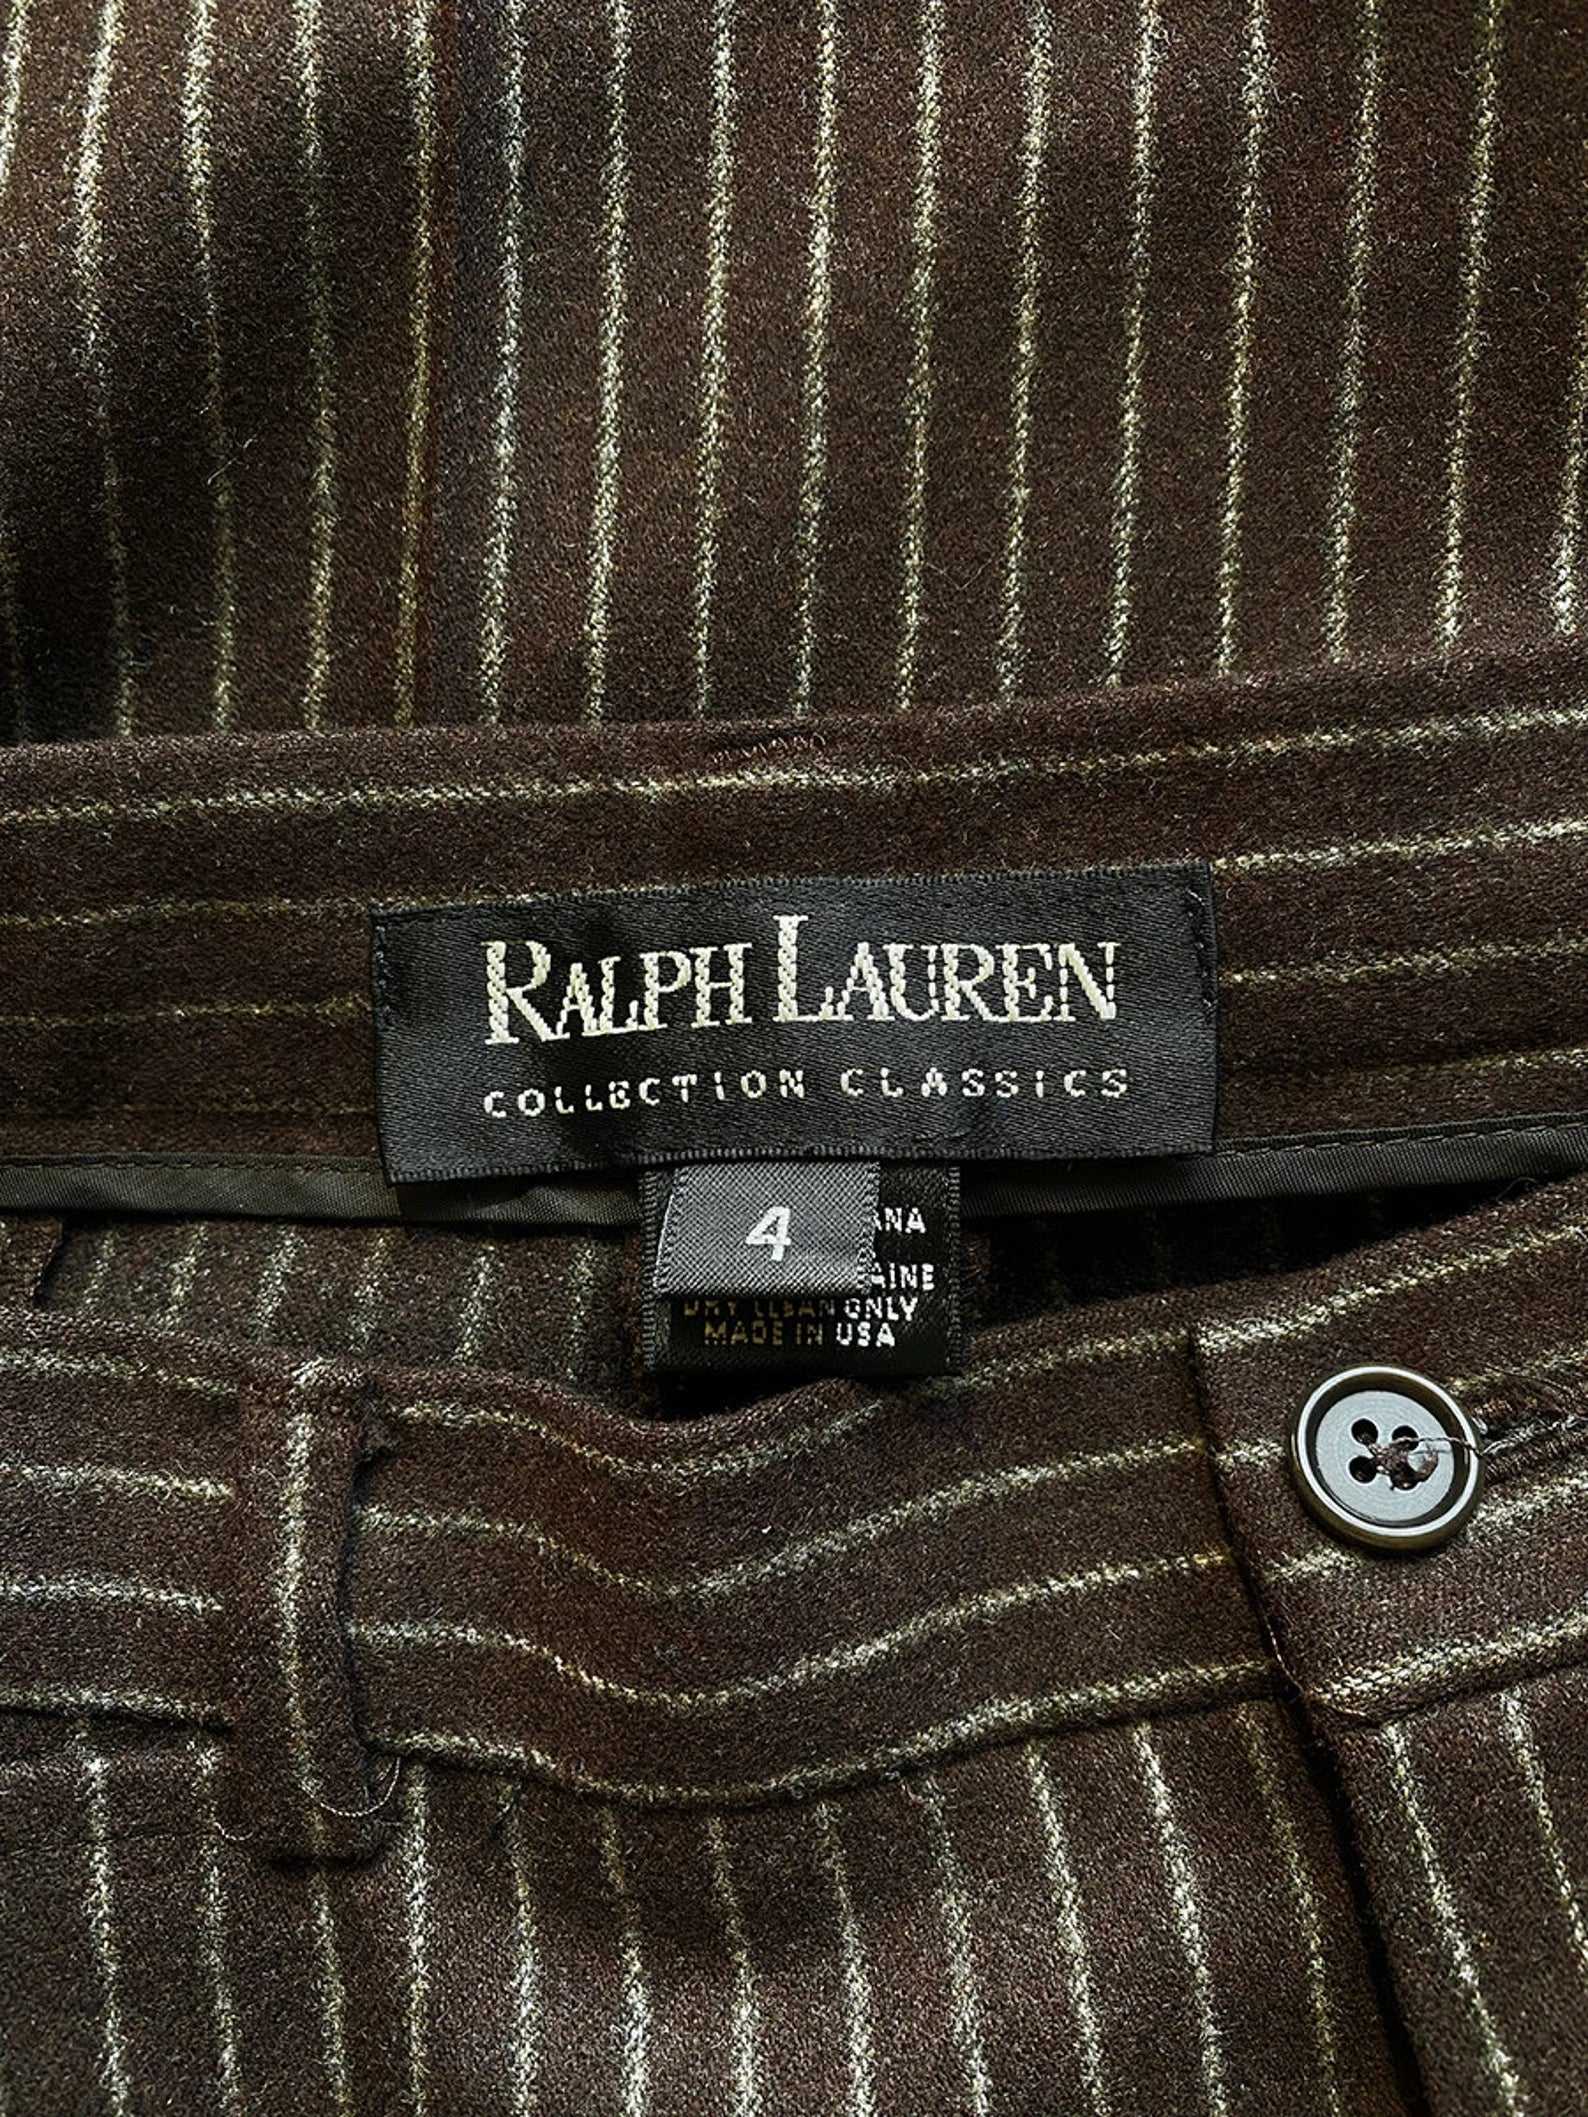 Wool Pinstriped Ralph Lauren Trousers 27x29.5